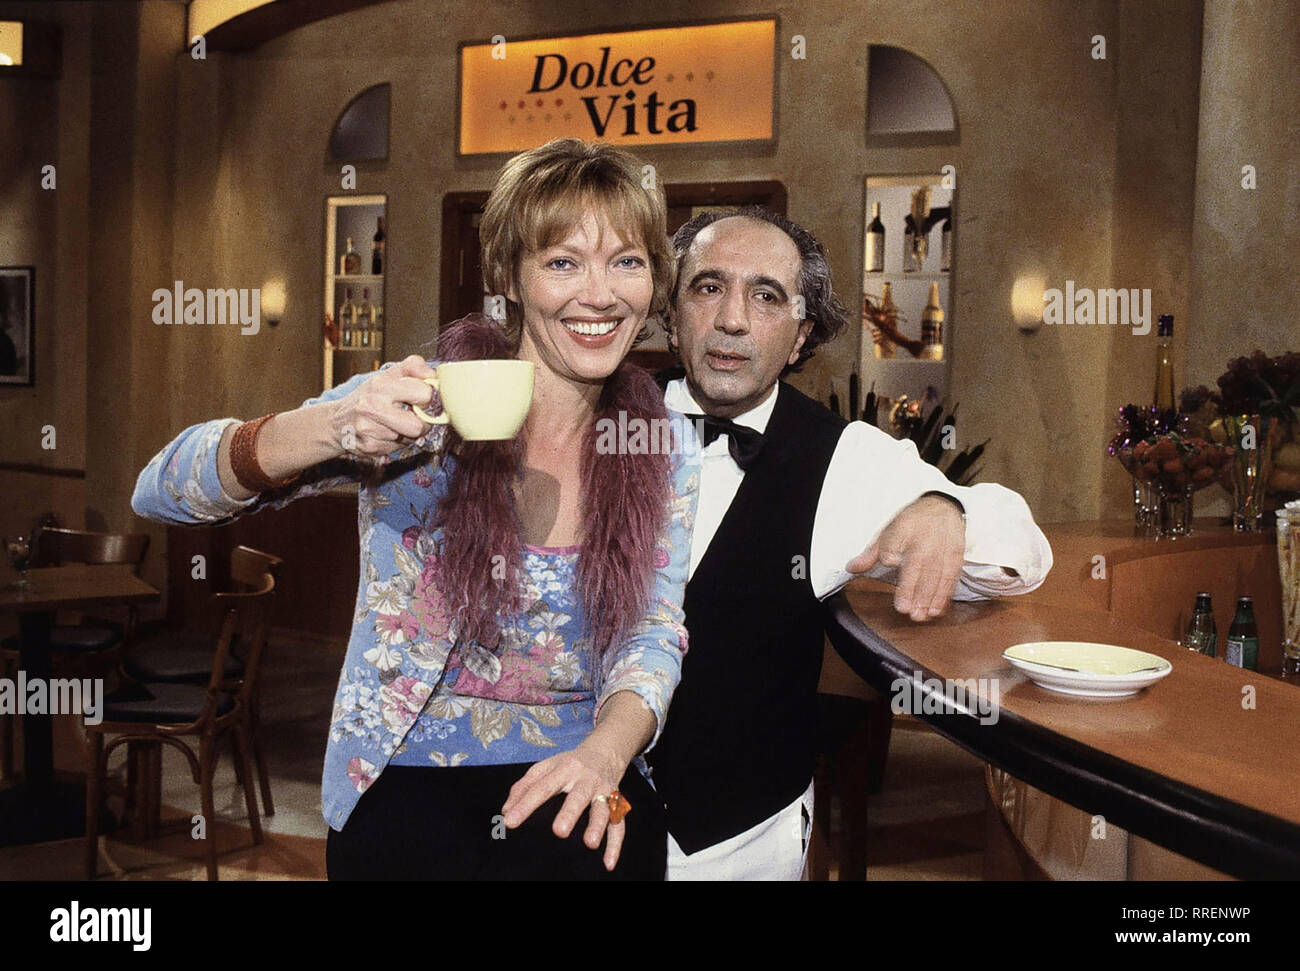 DOLCE VITA- Ein ideales Talk-Pflaster bietet das ZDF mit ihrer Großstadt-Bar im italienischen Stil. Die Stimmung in der Talkshow 'Dolce Vita' soll heiter sein. So will man entspannt plaudern und lästern. Dafür sorgt die sympathische Gastgeberin LUZIA BRAUN und der Barmann BRUNO AGOSTINO, wenn es denn heißt: 'Tutto bene - Alles klar, Bruno?' - 'Si, Signora'  aka. Talk mit Luzia Braun / Überschrift: DOLCE VITA Stock Photo